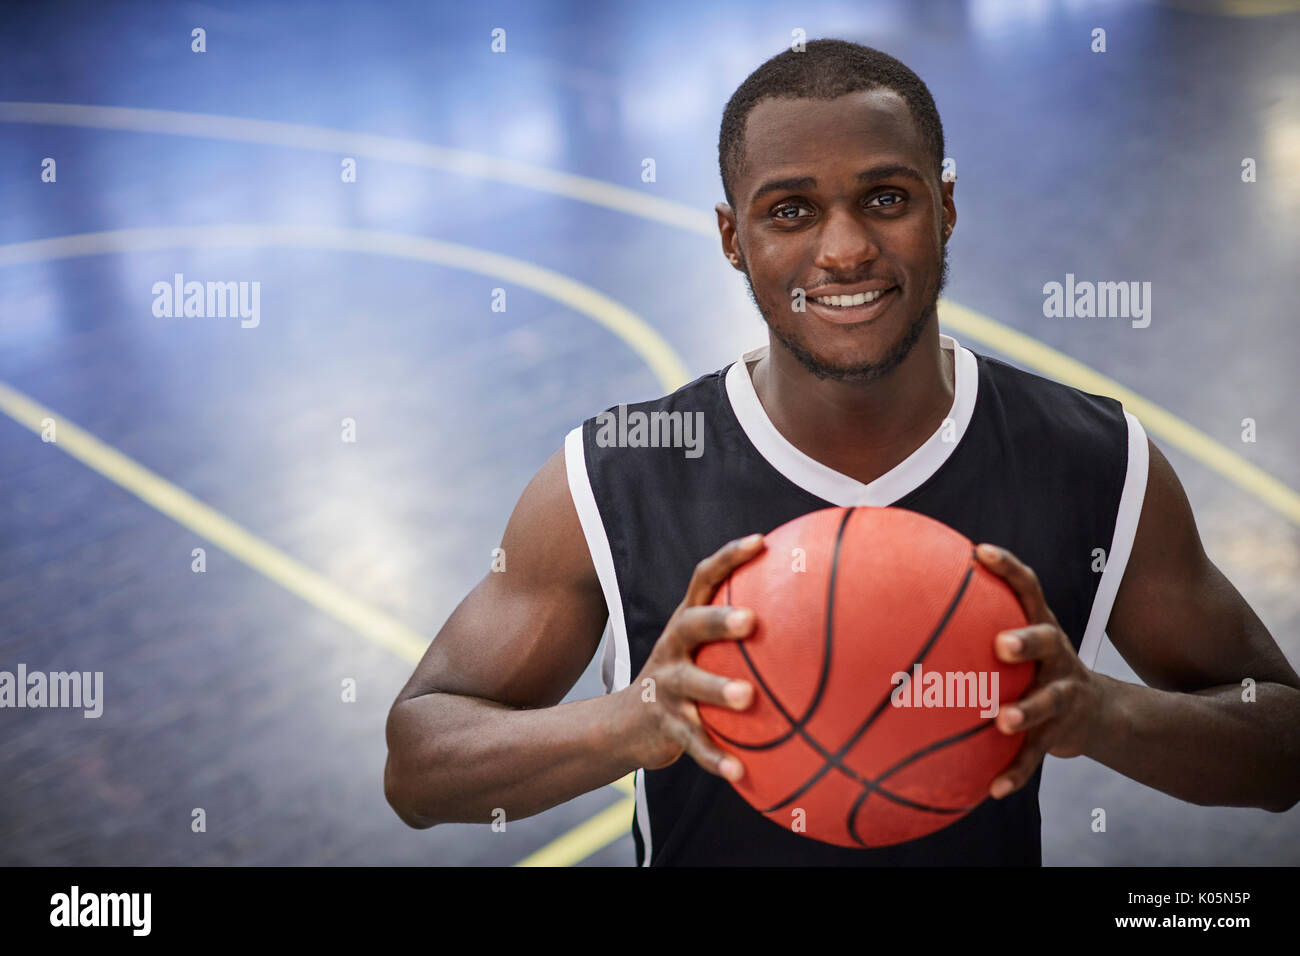 Portrait lächelnde junge männliche Basketball Spieler mit Basketball auf Gericht Stockfoto